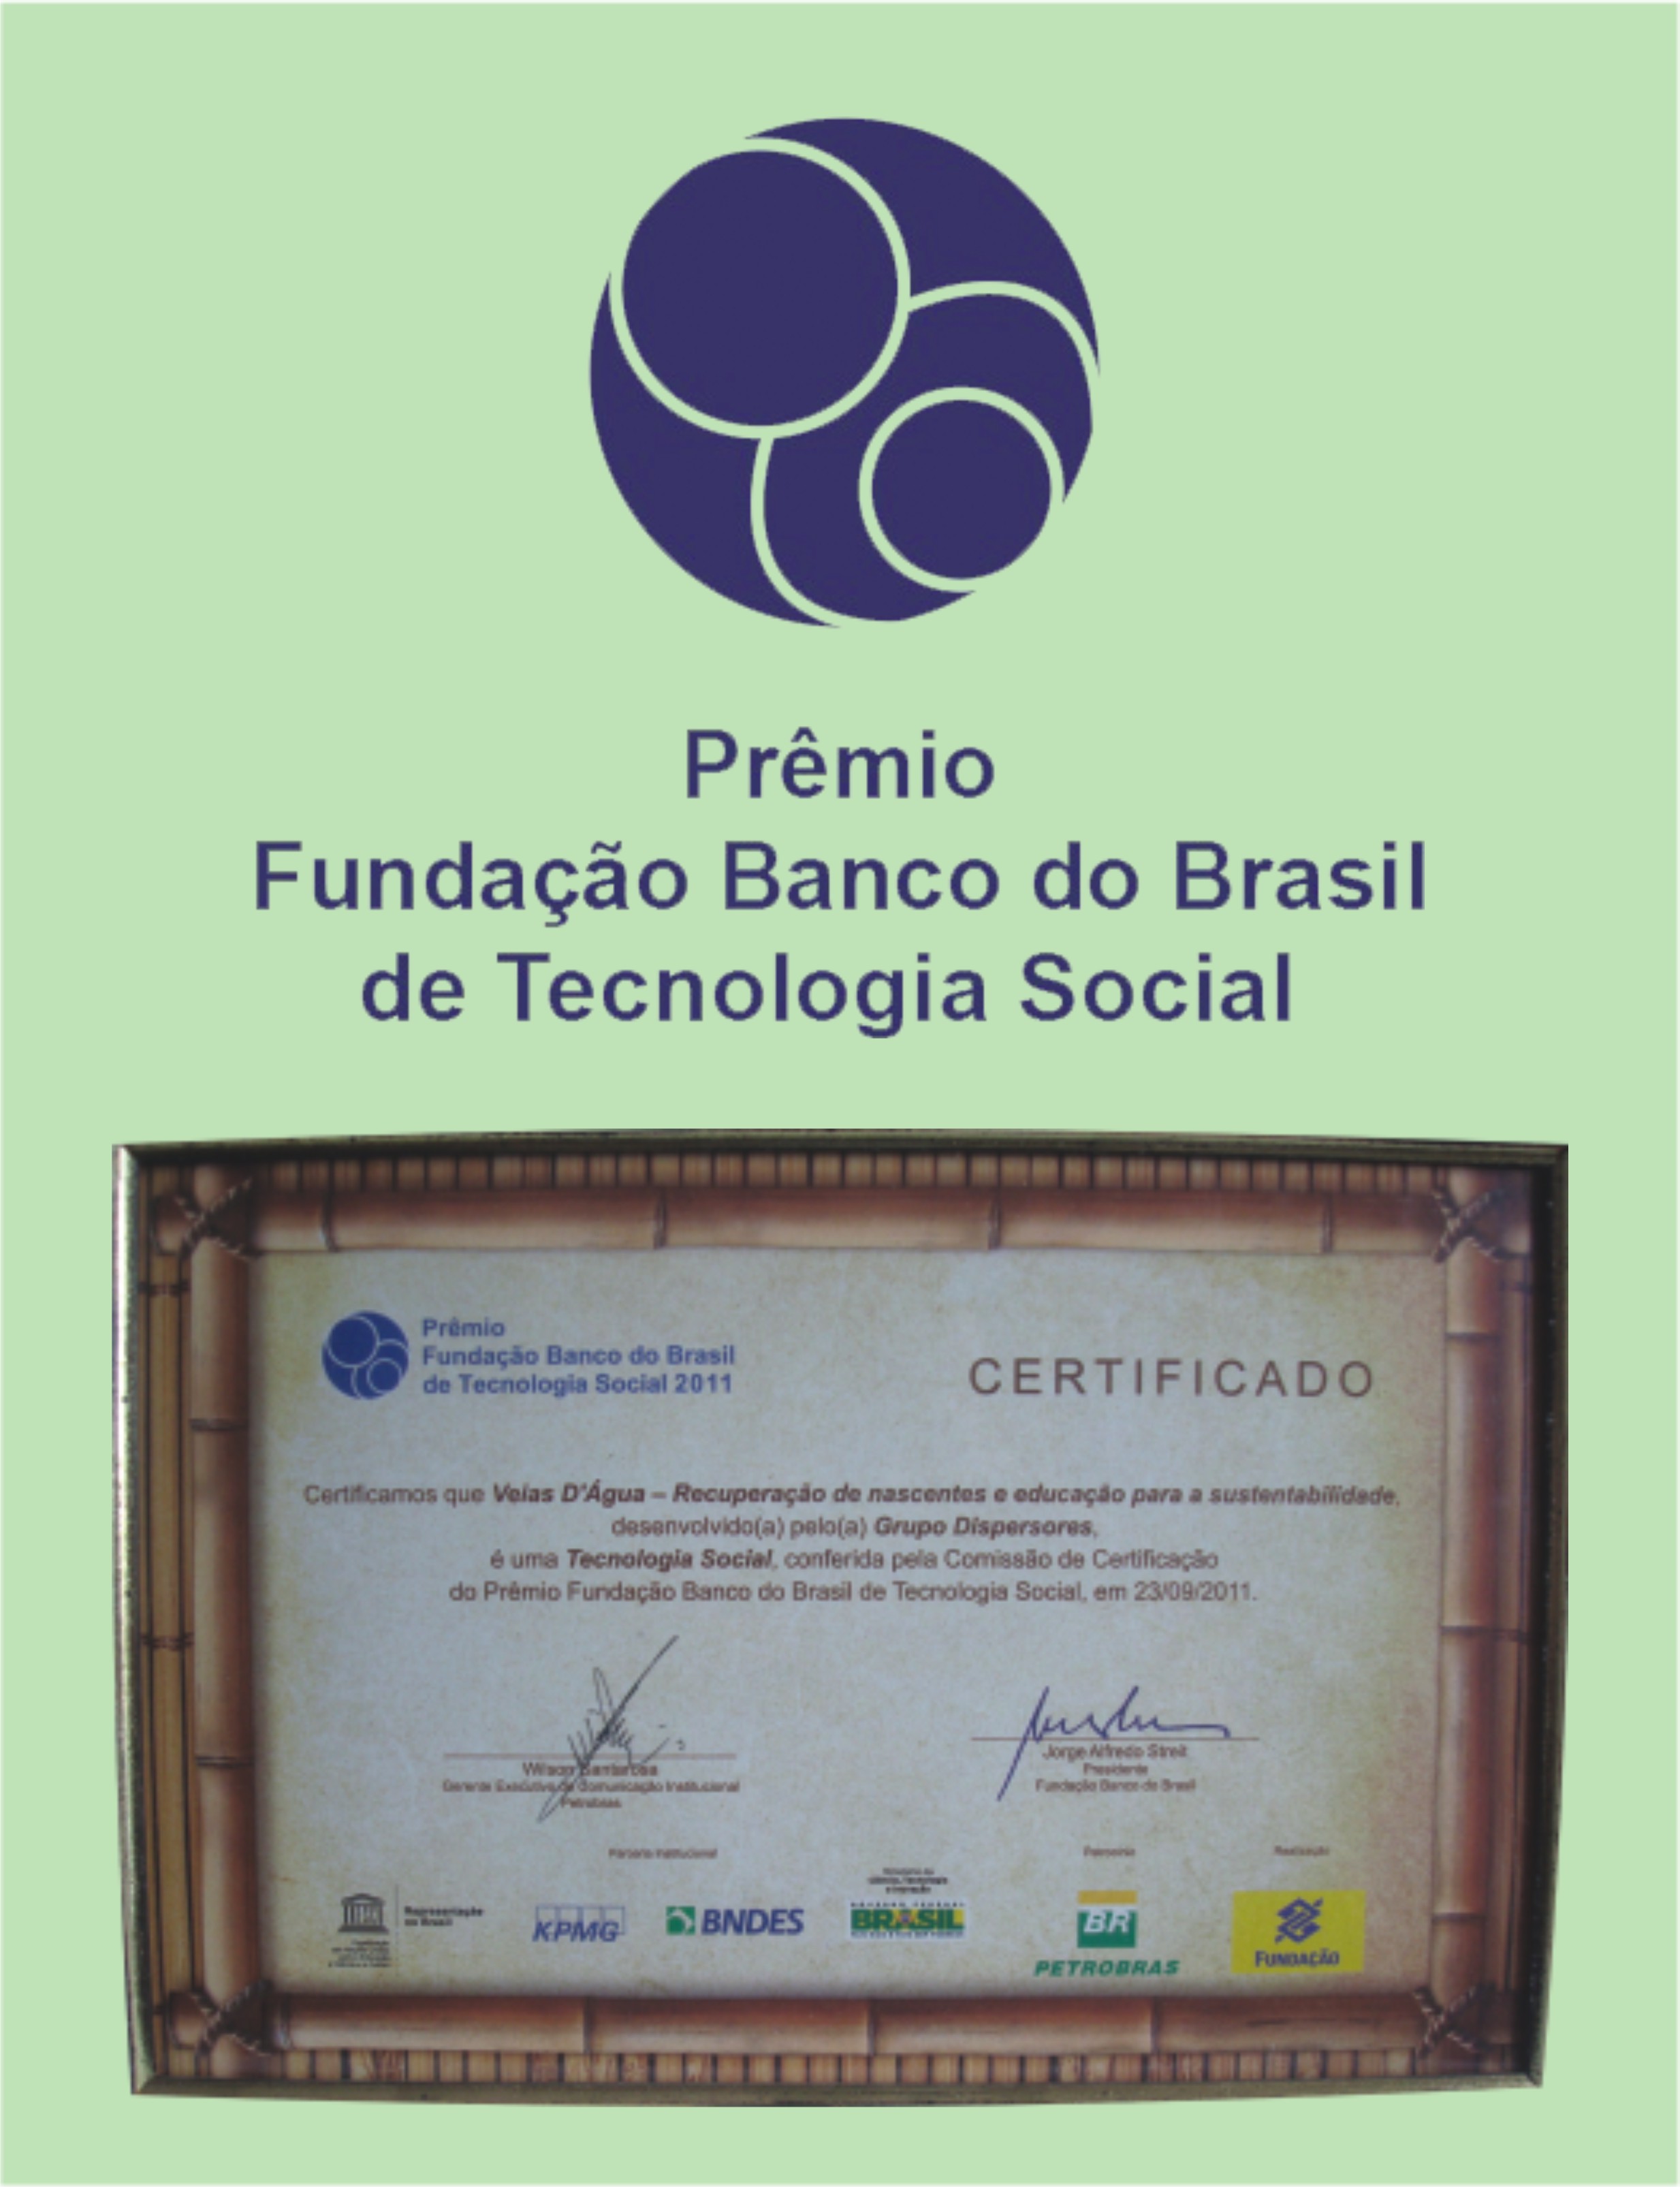 Prêmio Fundação Banco do Brasil de Tecnologia Social